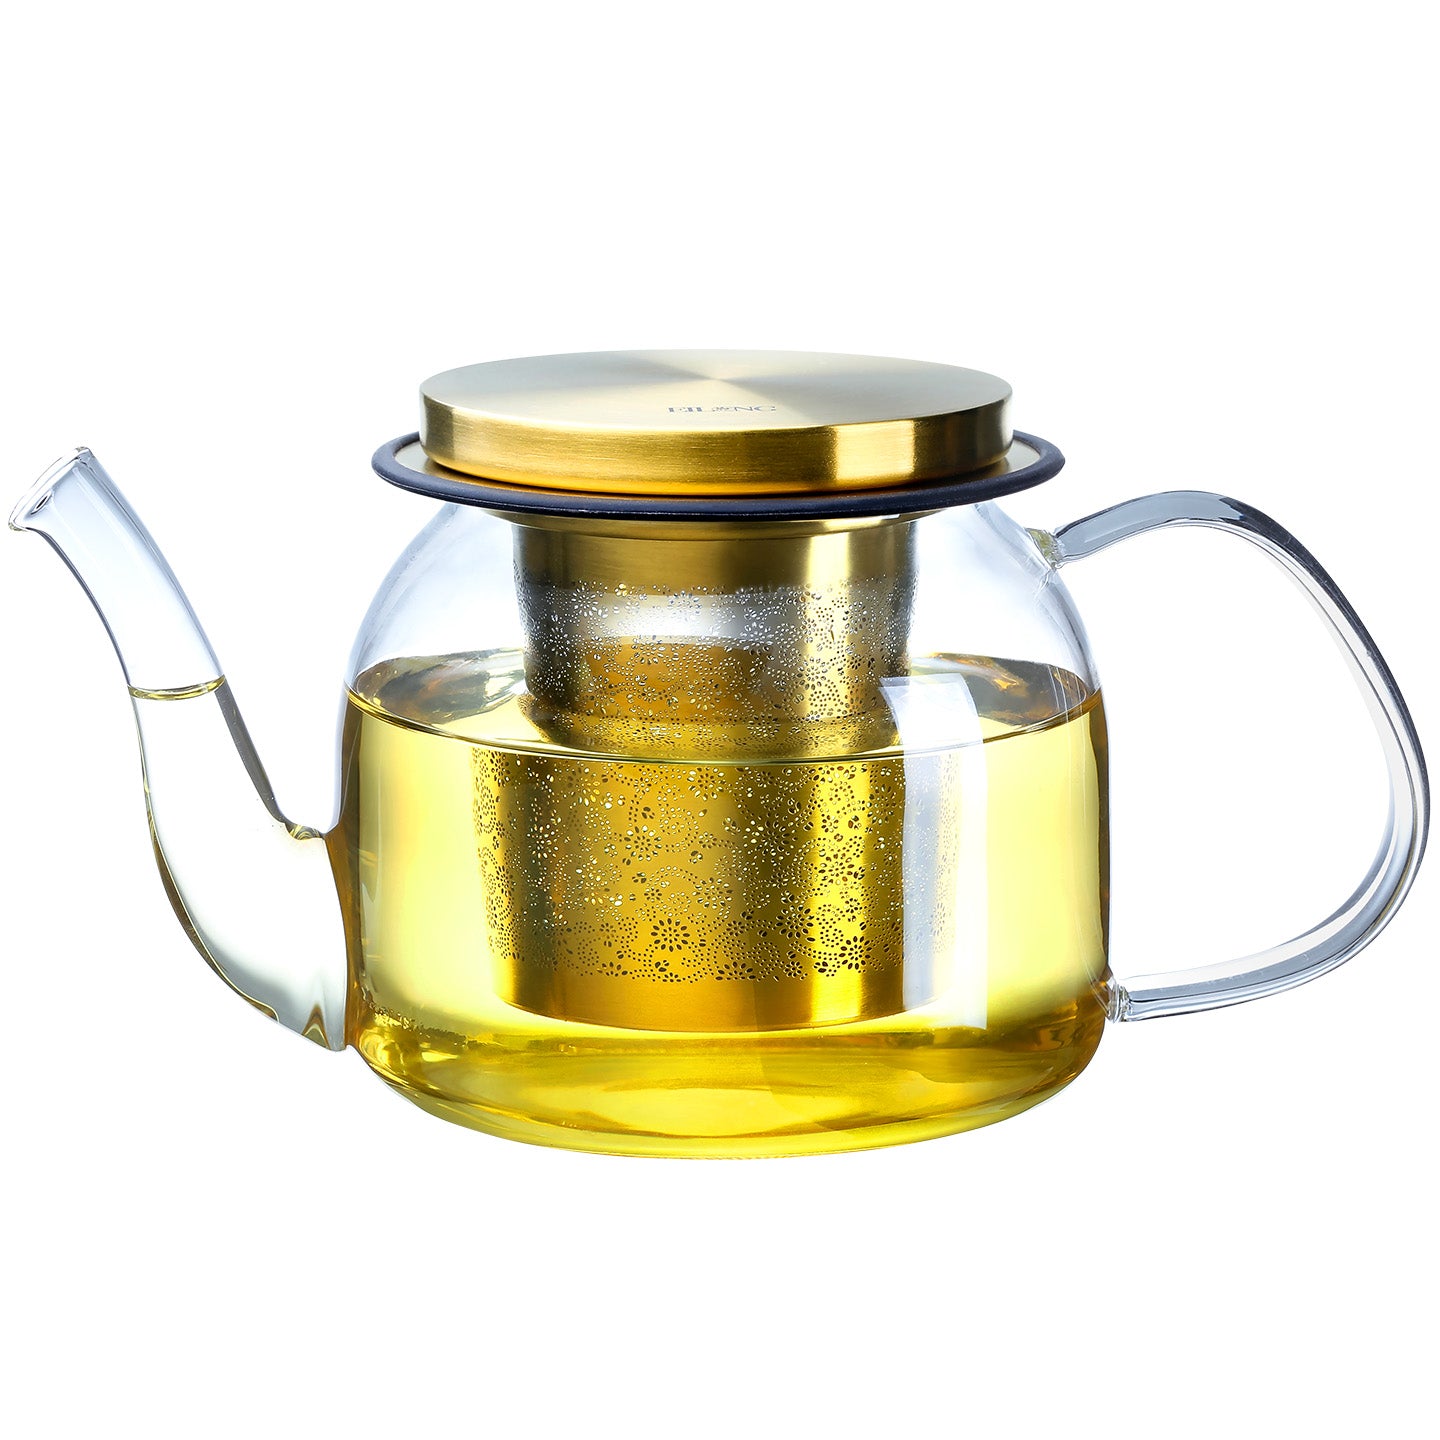 https://www.eilong.com/cdn/shop/products/glass-teapot-infuser-aurora-22oz-gold.jpg?v=1654756043